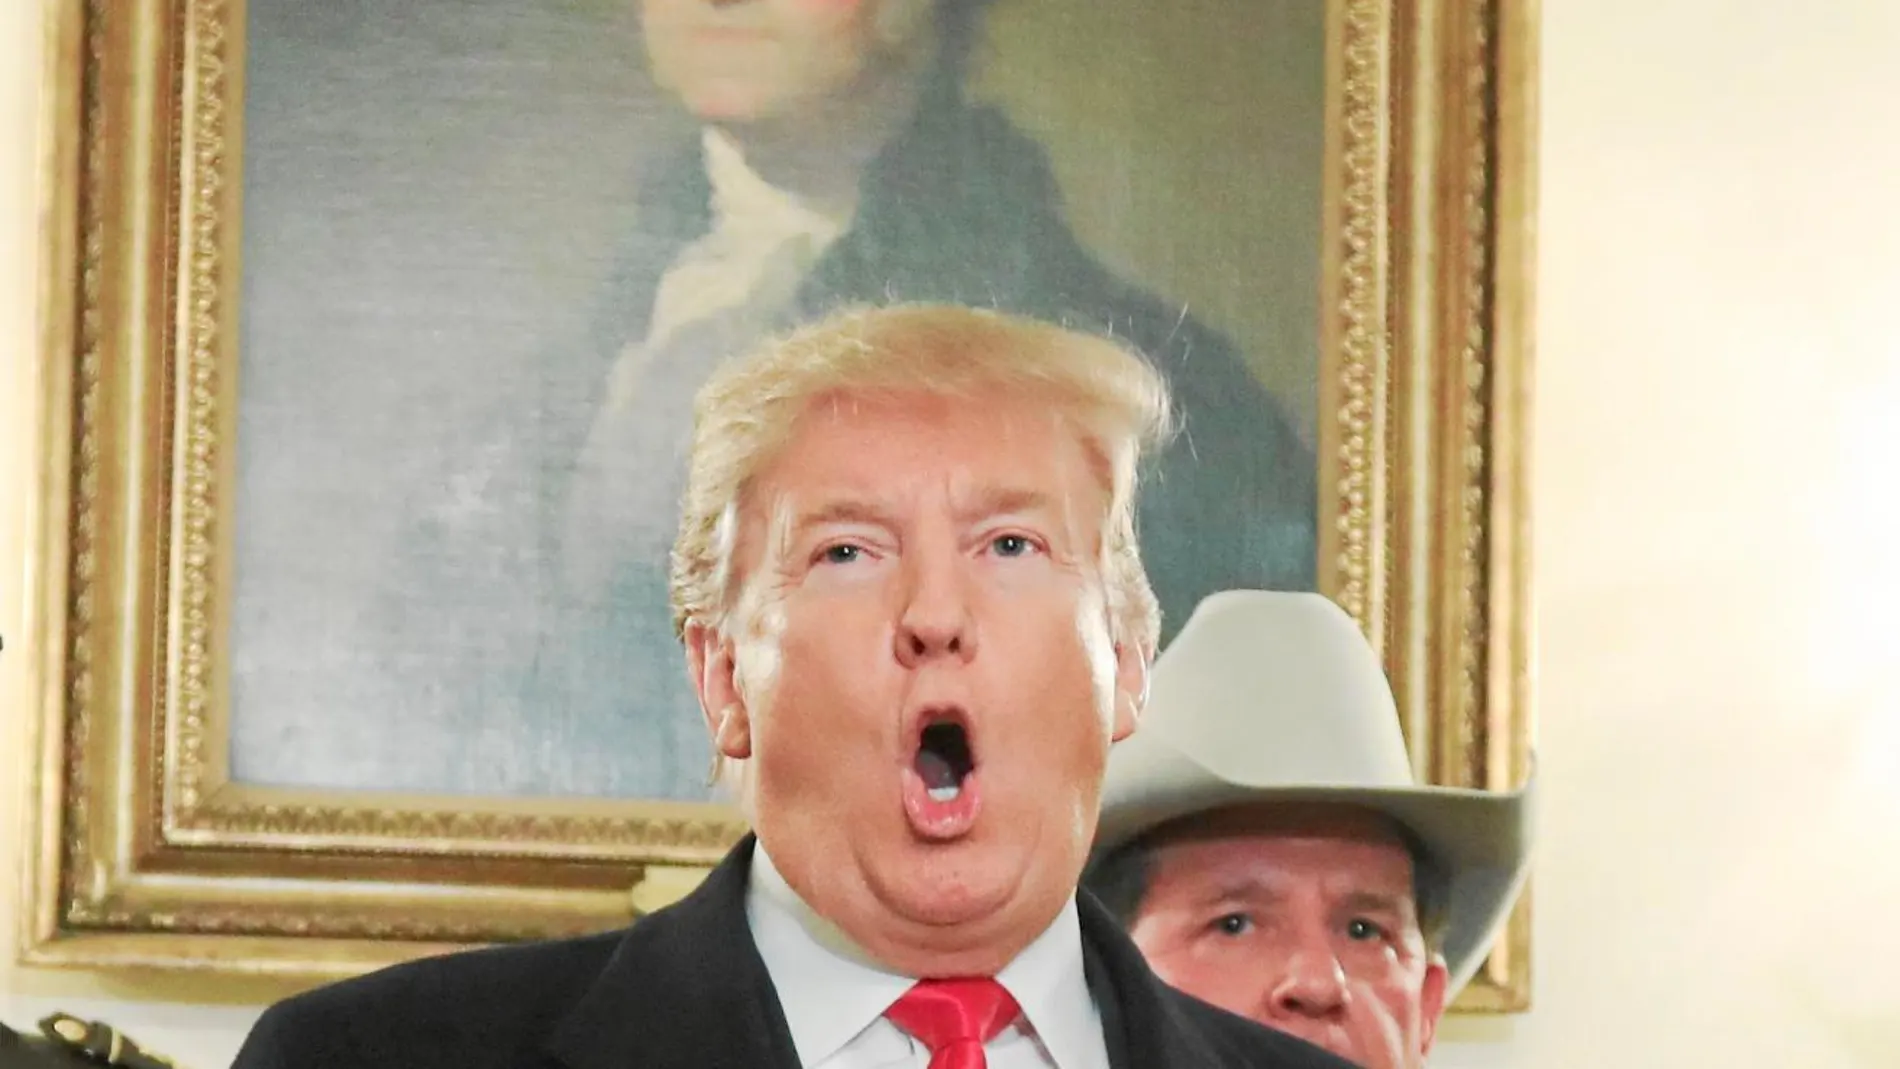 El presidente Donald Trump recibió ayer en la Casa Blanca a una representación de "sheriffs"